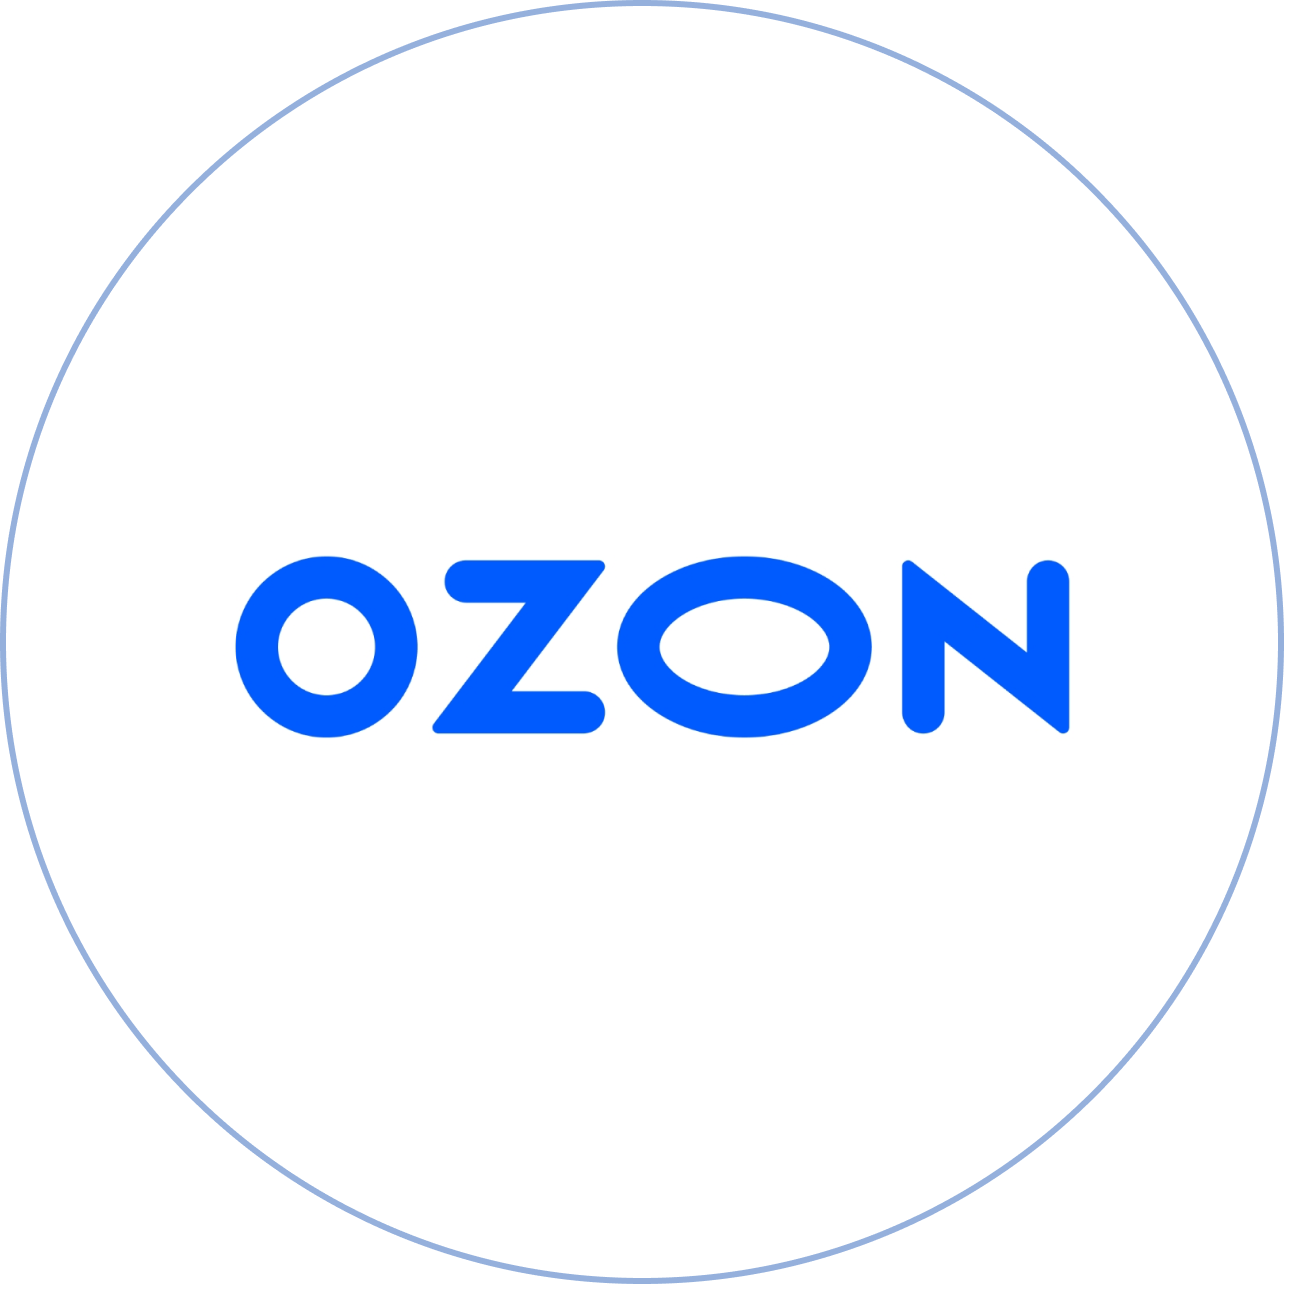 Озон интернет магазин красный. Озон логотип. Магазин Озон логотип. Логотип Озон без фона. Надпись Озон.